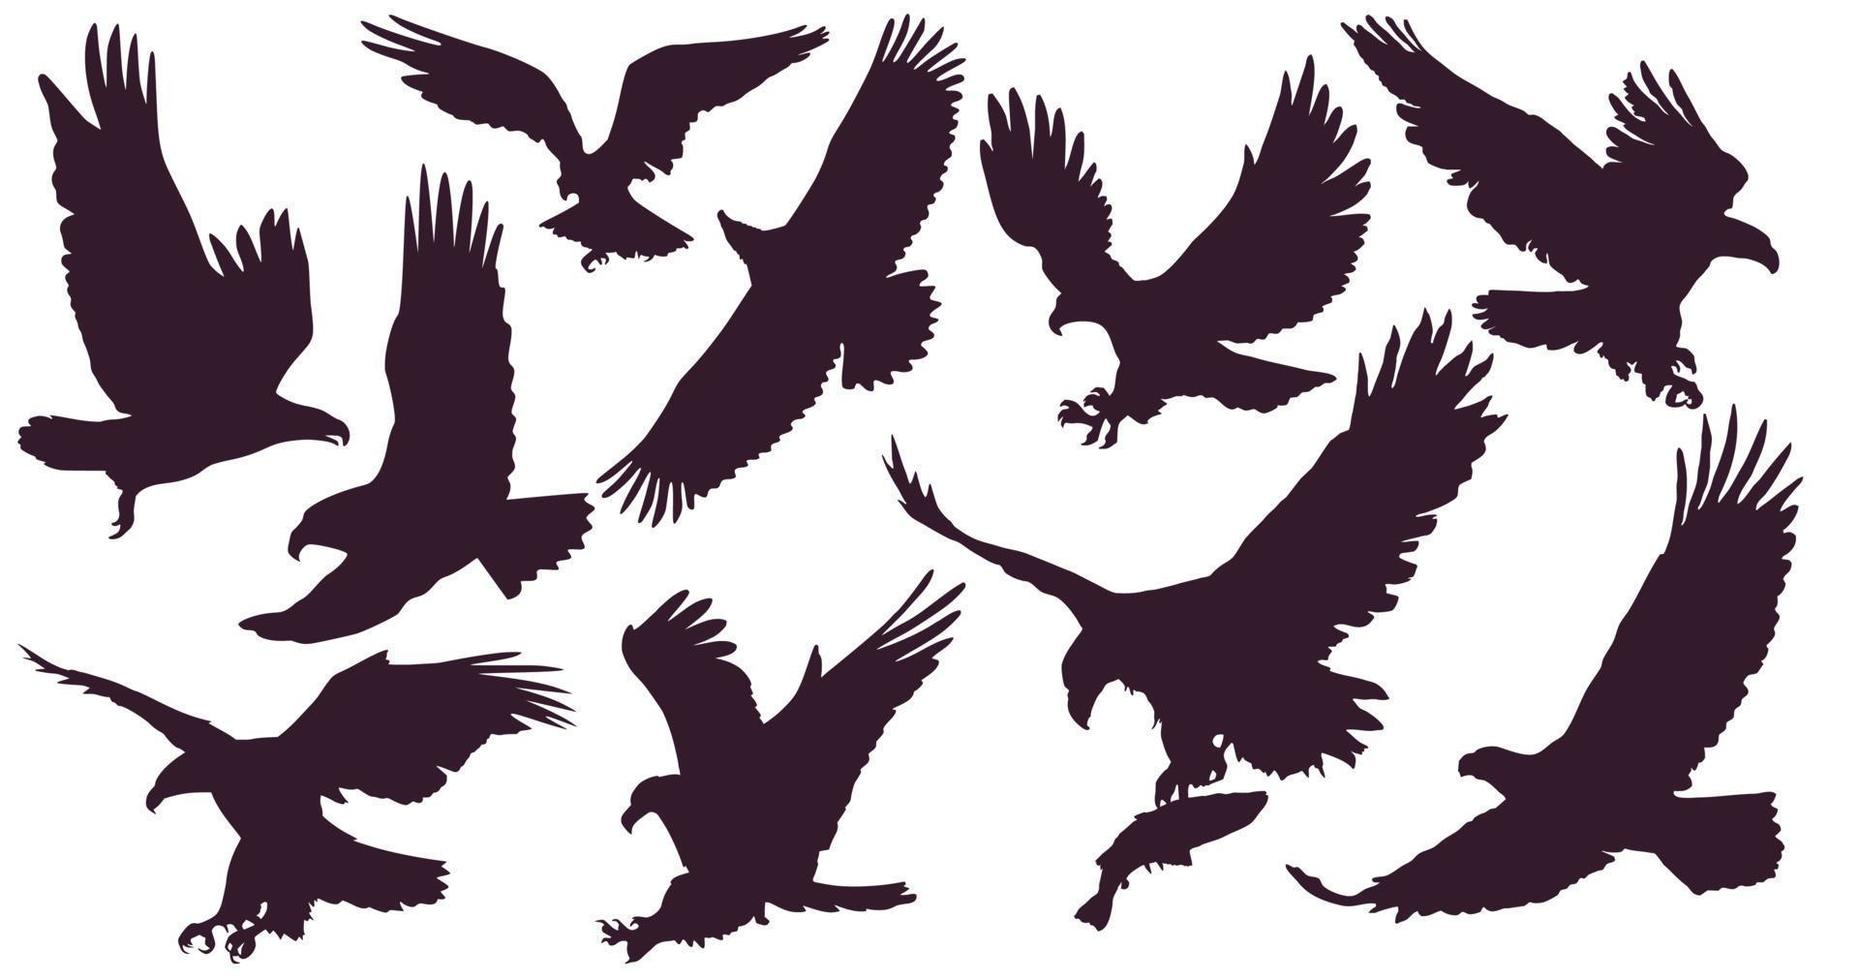 águilas conjunto de pájaro rey. 10 siluetas de águilas. un águila atacante  volando en el cielo con una gran envergadura. 9392963 Vector en Vecteezy